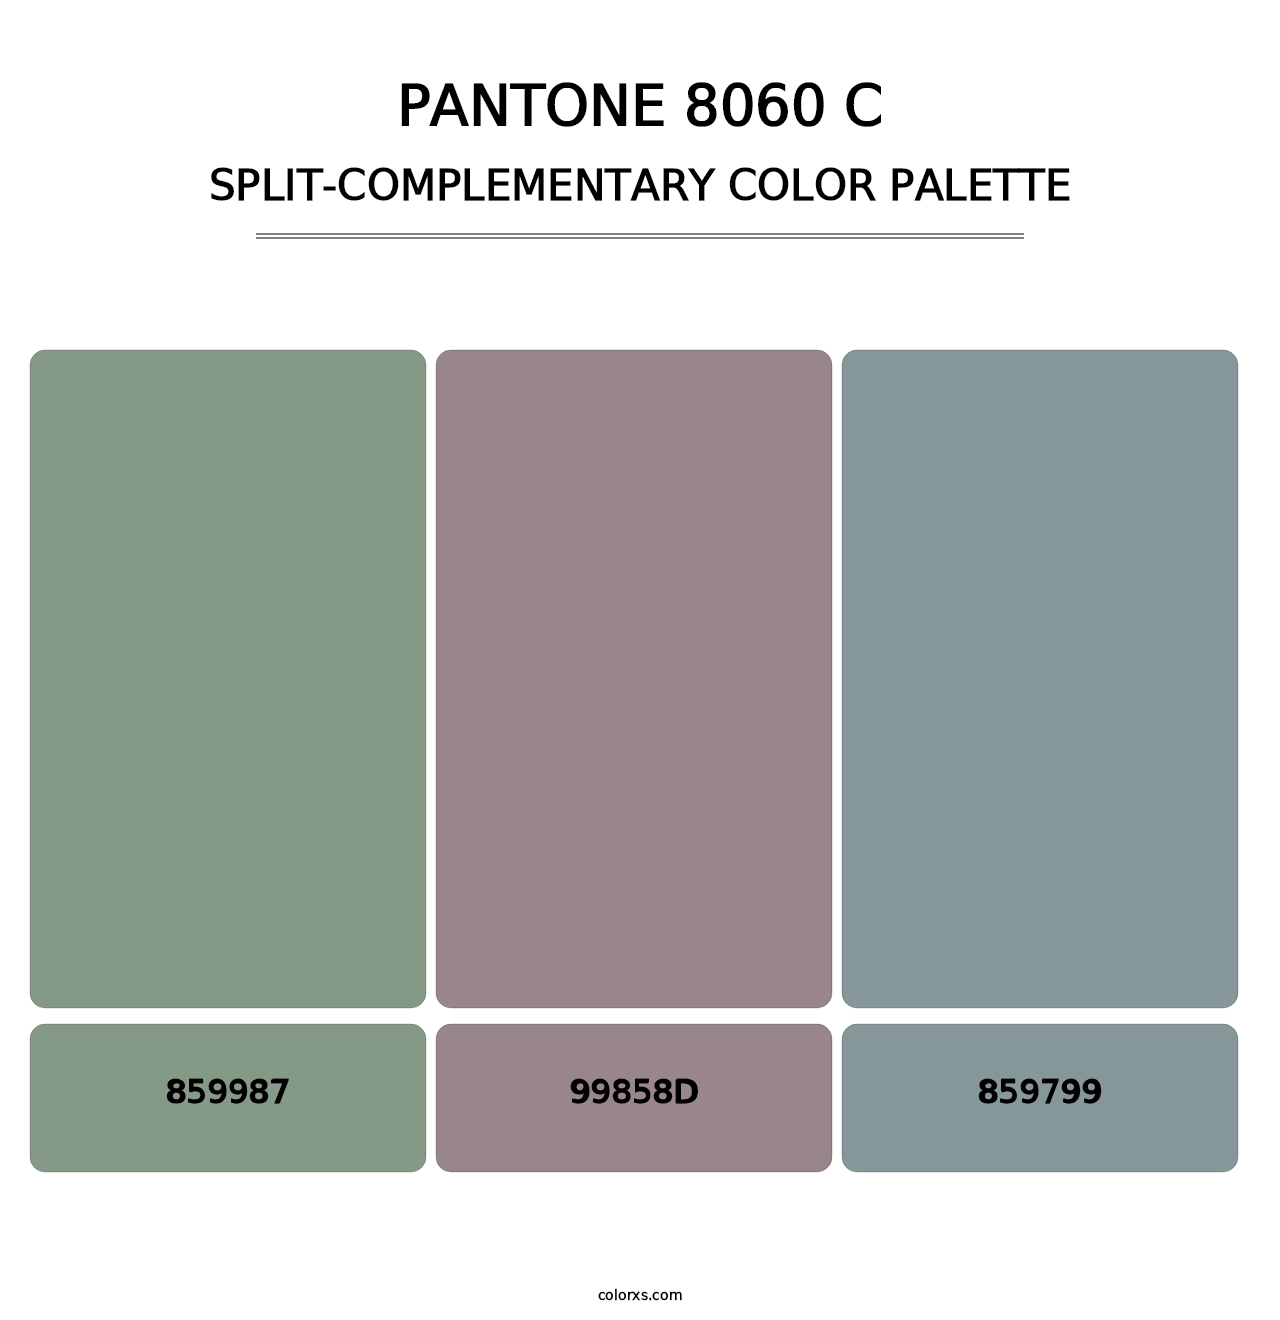 PANTONE 8060 C - Split-Complementary Color Palette